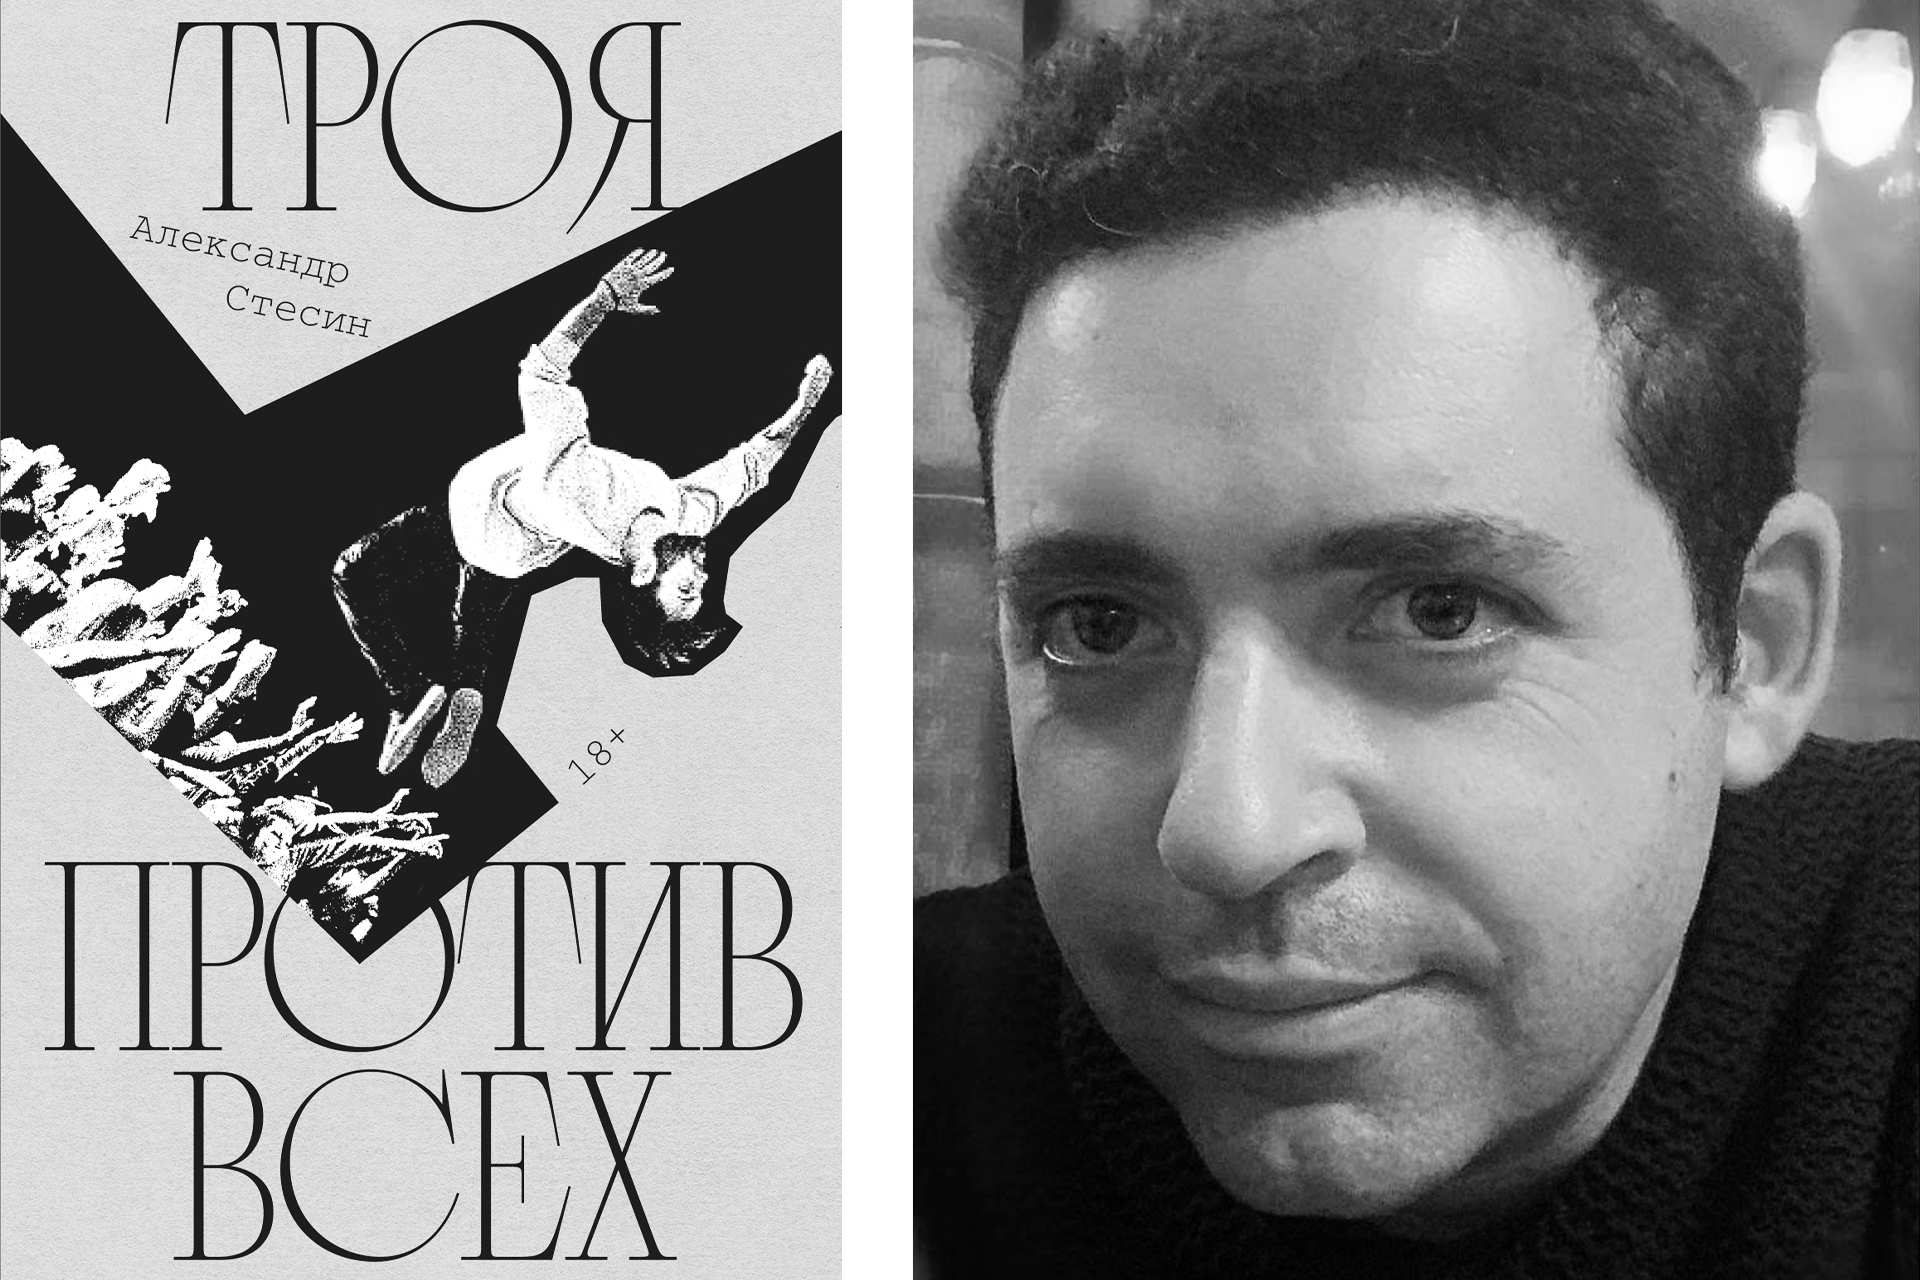 Слева: обложка книги; справа: Александр Стесин